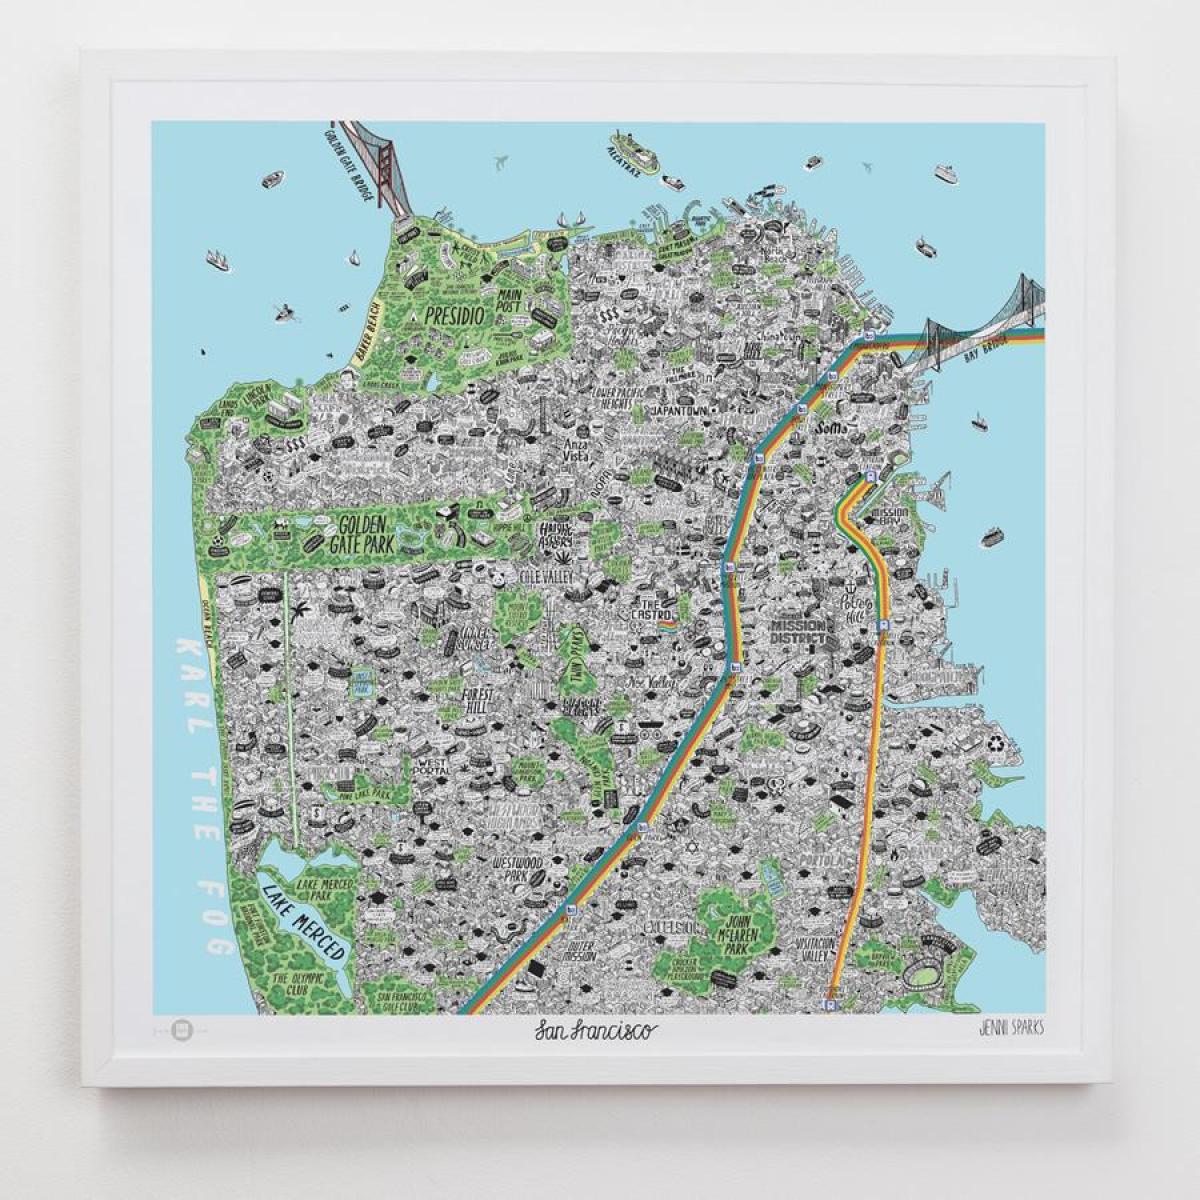 Karta za San Francisco art